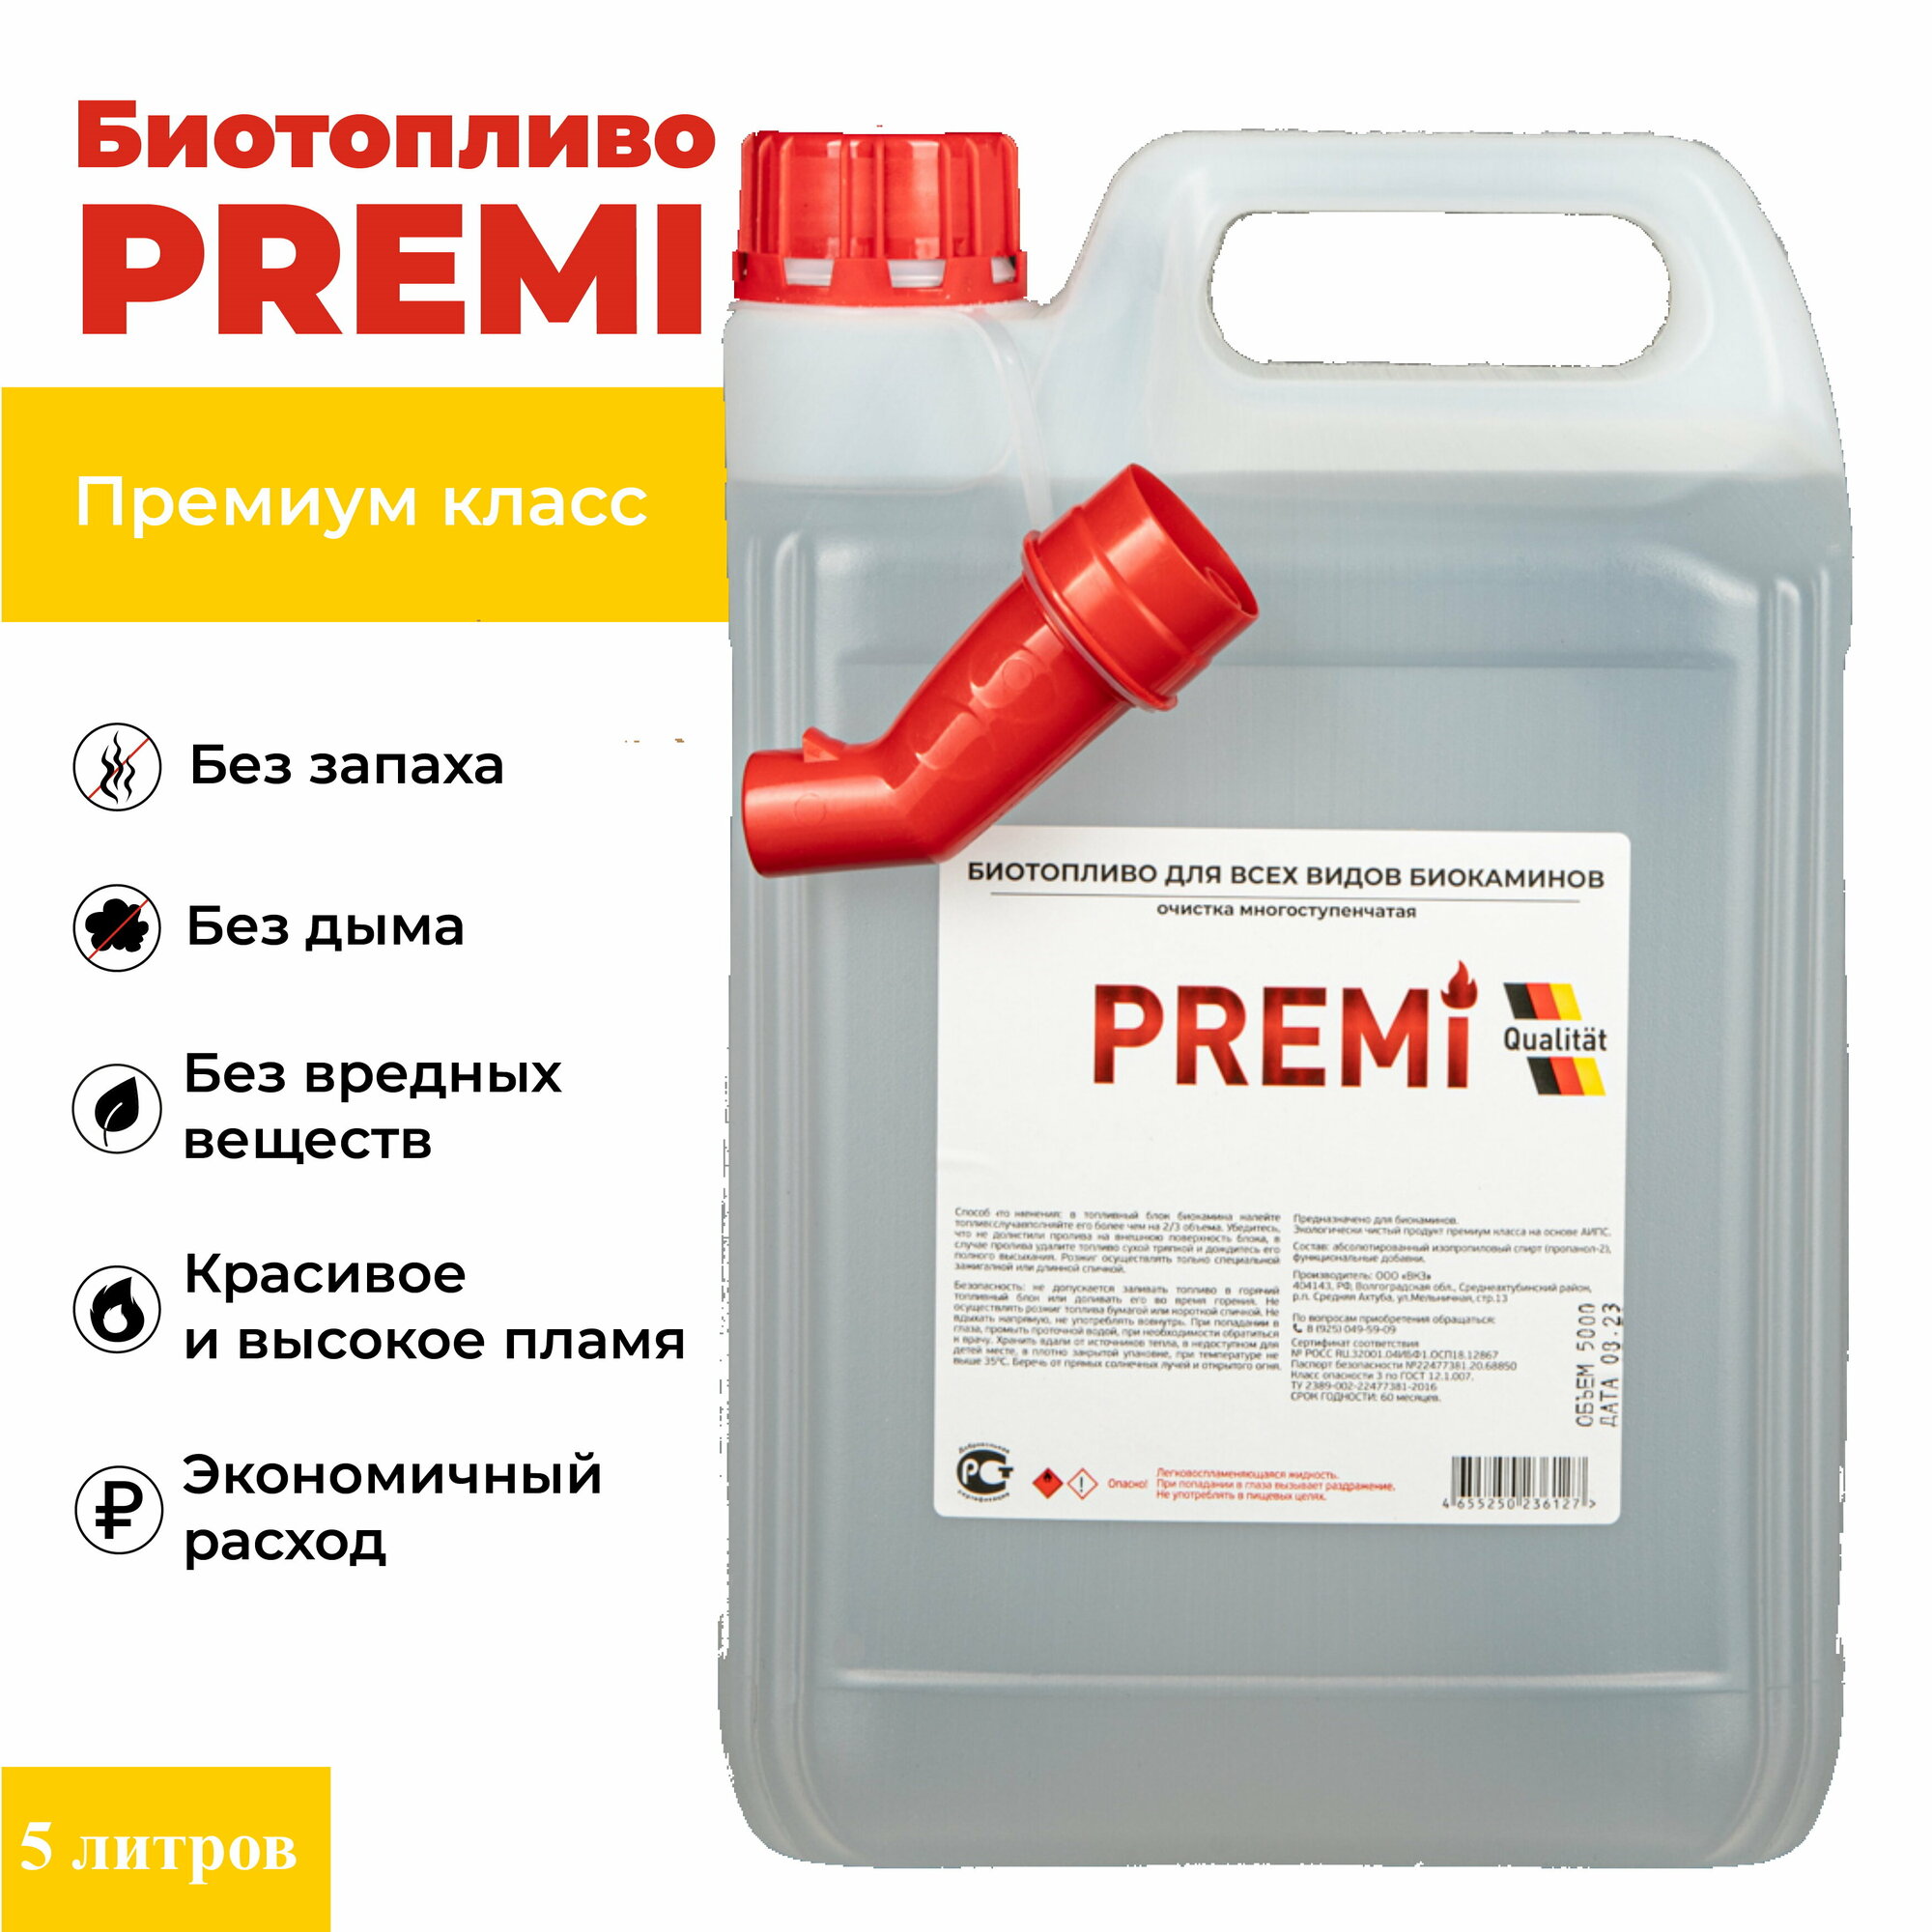 Биотопливо для биокаминов Premi 5 л носиком-лейкой в комплекте. Канистра. Премиум класса